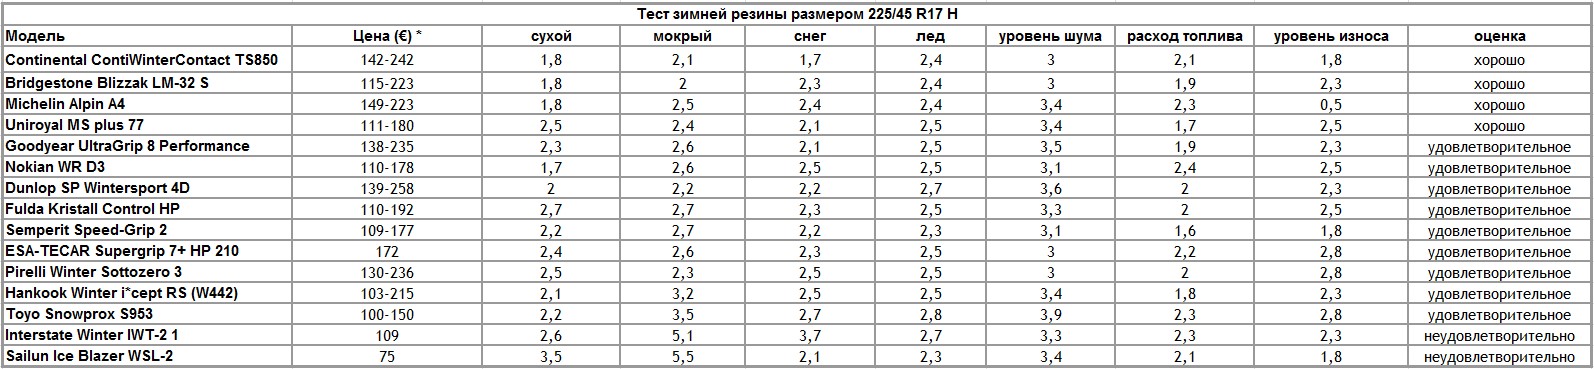 Итоги теста зимних шин 225/45 R17 2012